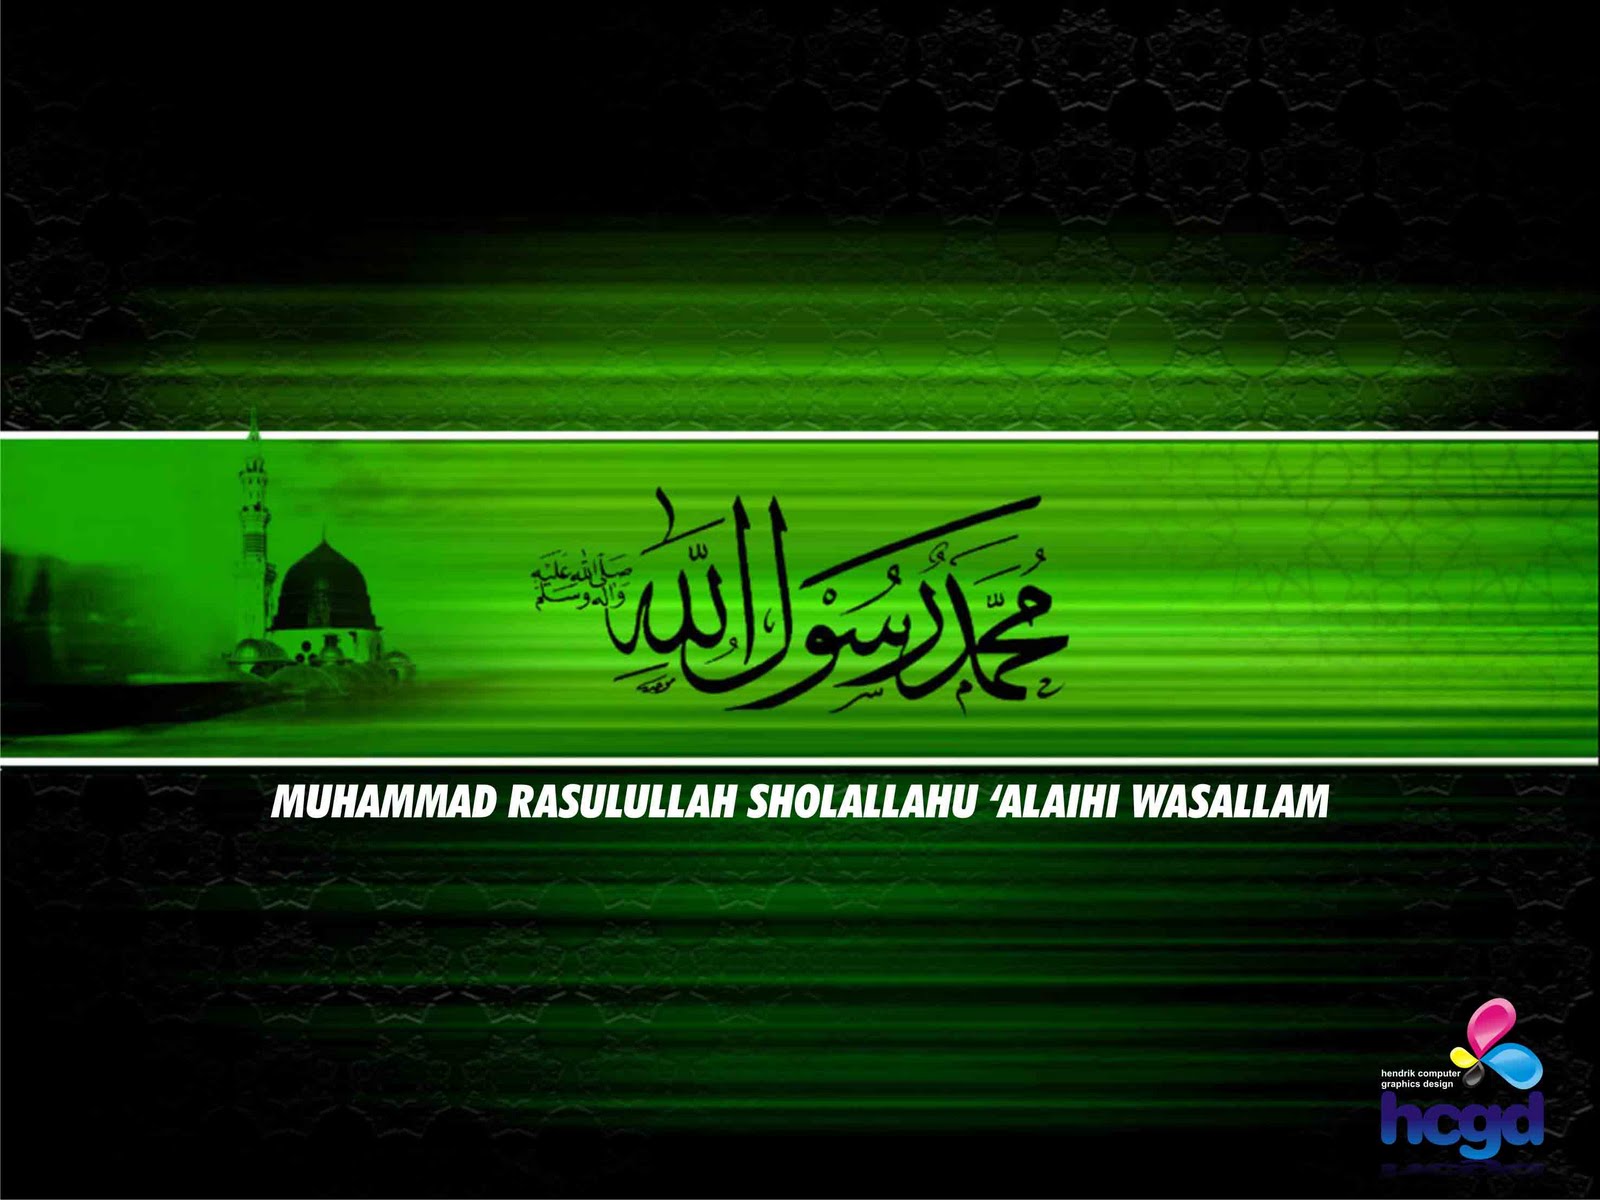  HD  Wallpaper  Pernikahan Islam Download  Kumpulan 